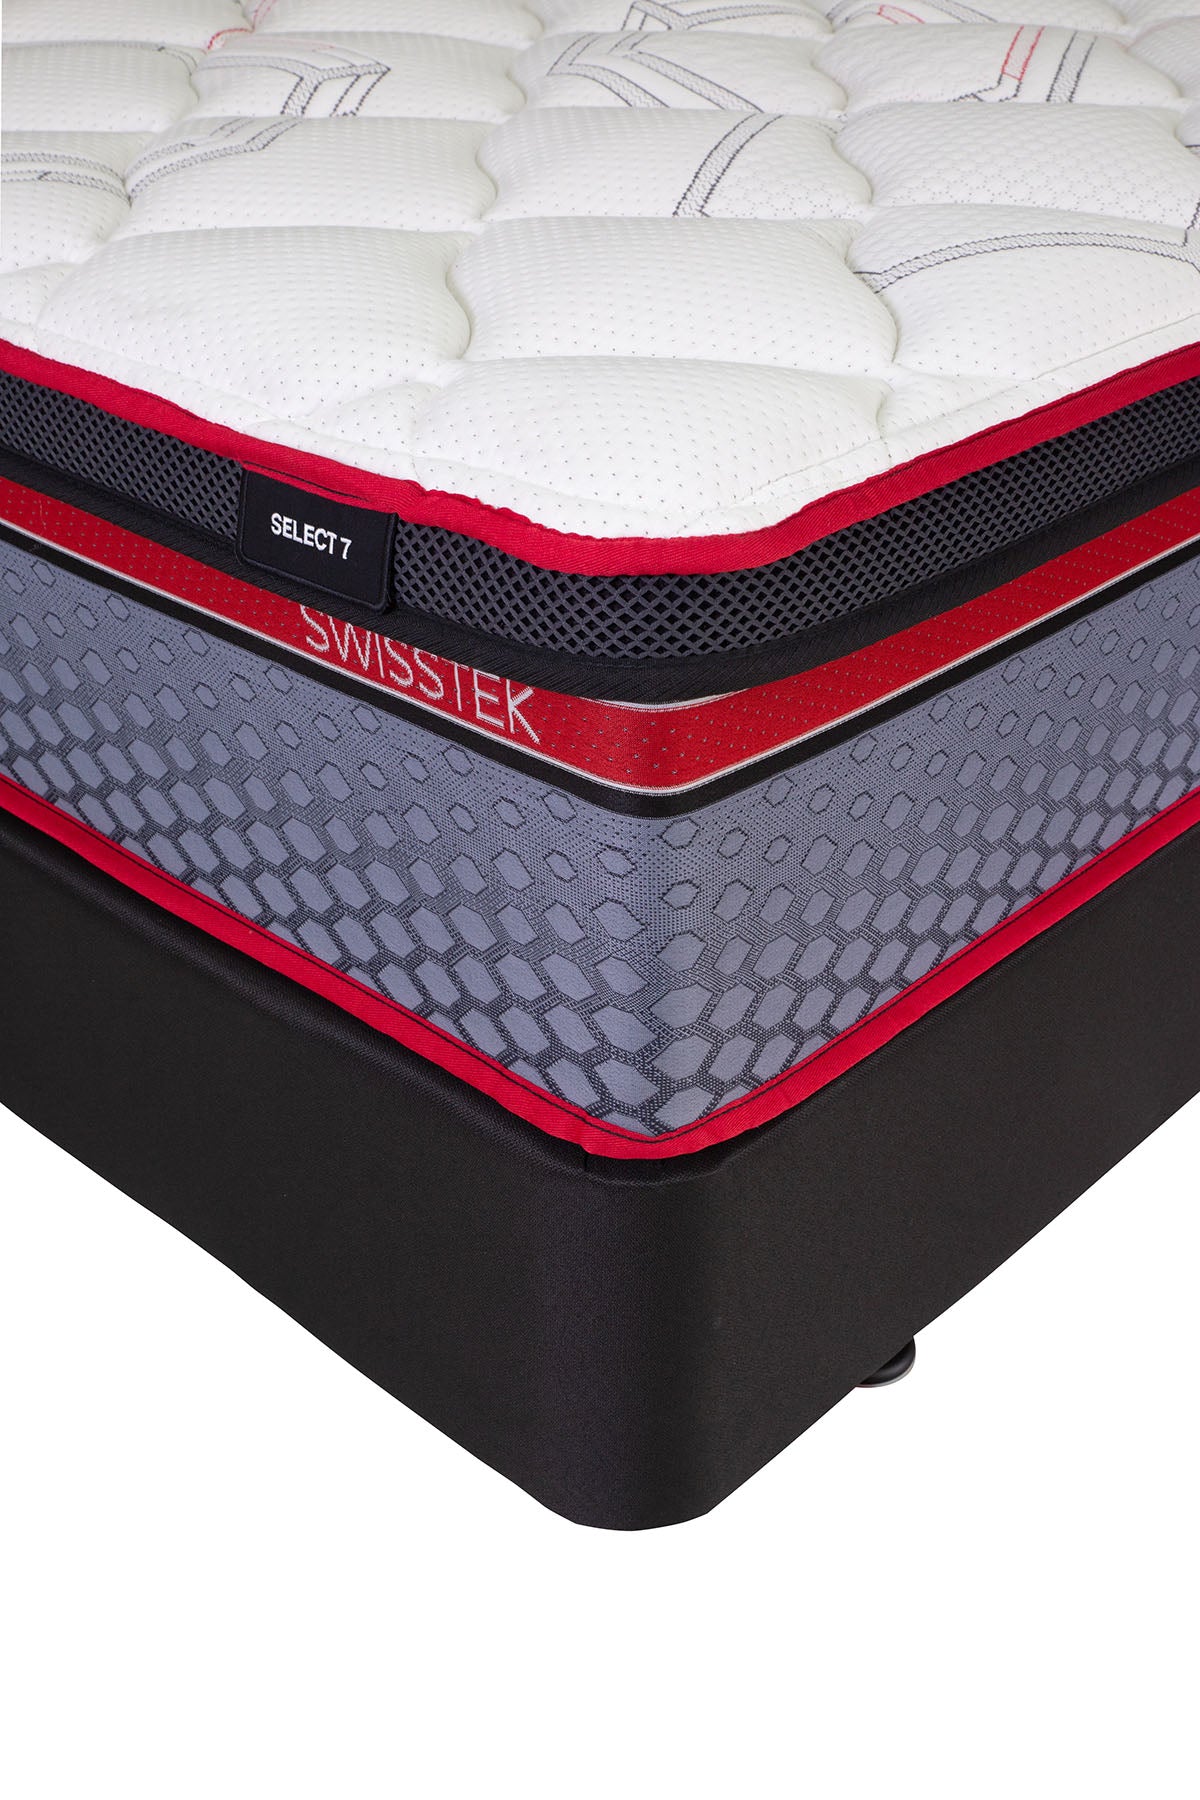 select7-long-single-mattress-3